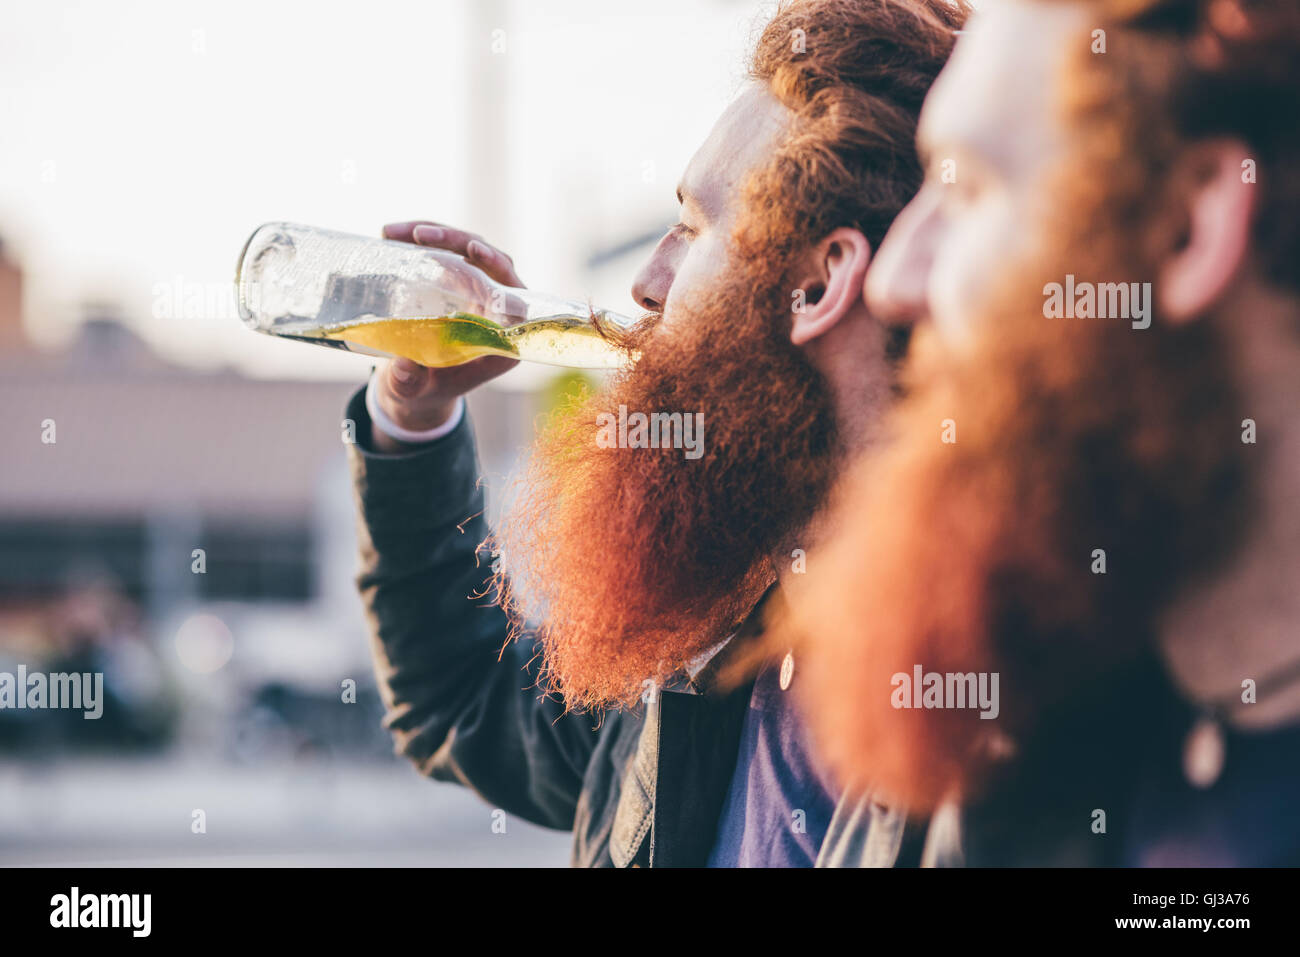 Profil de jeune homme hipster twins avec les cheveux rouges et barbes de boire la bière en bouteille Banque D'Images